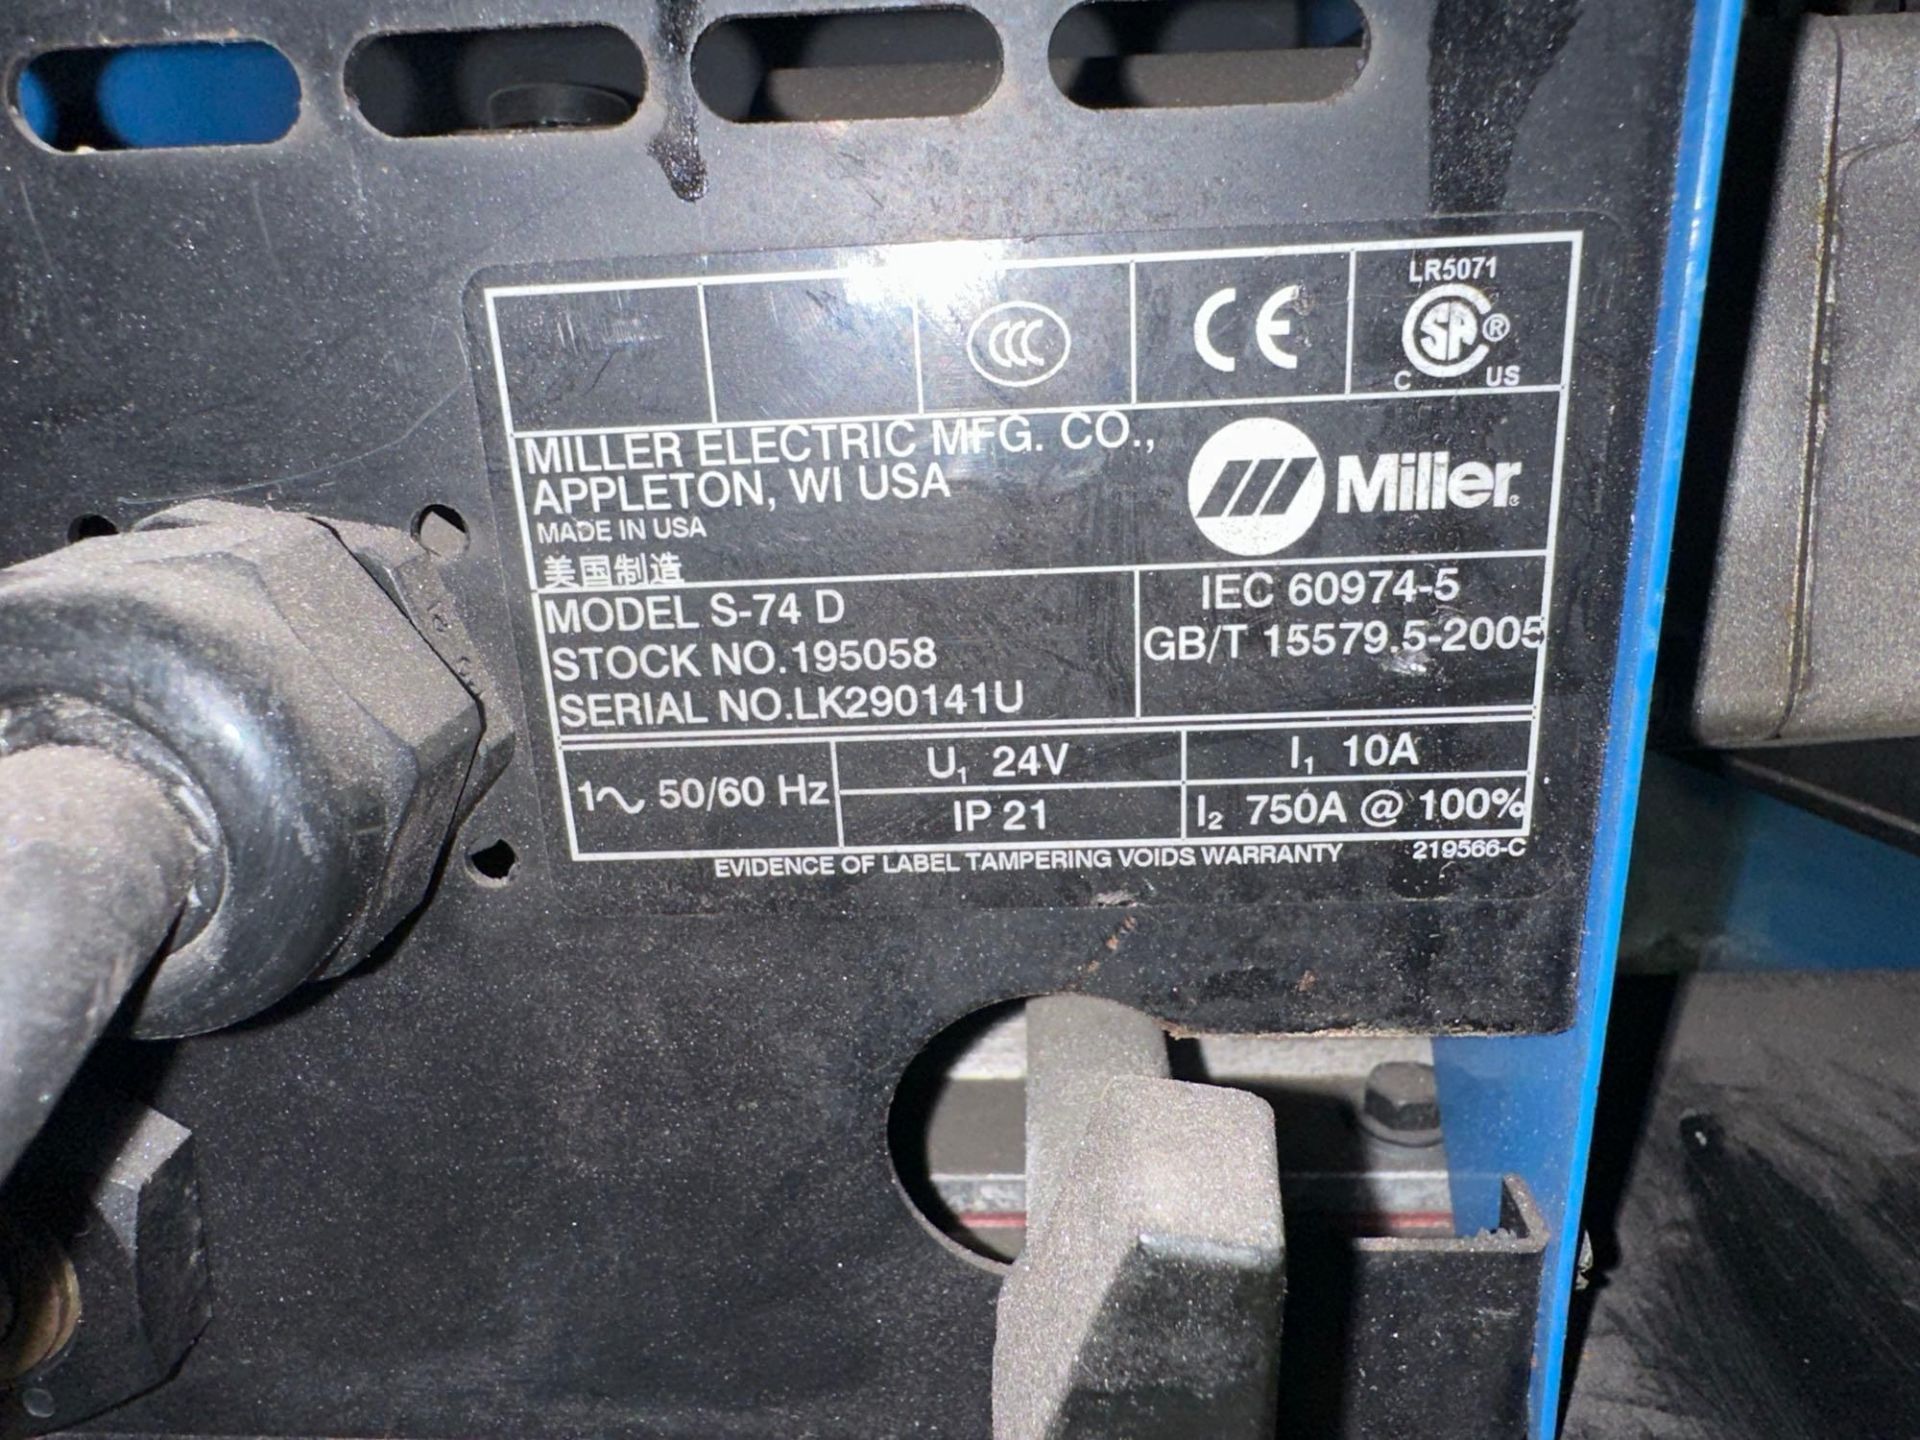 Miller Deltaweld 652 Mig Welder, 38 Volts, 450 Amps, 44 Max OCV, s/n LK022196C - Image 11 of 11